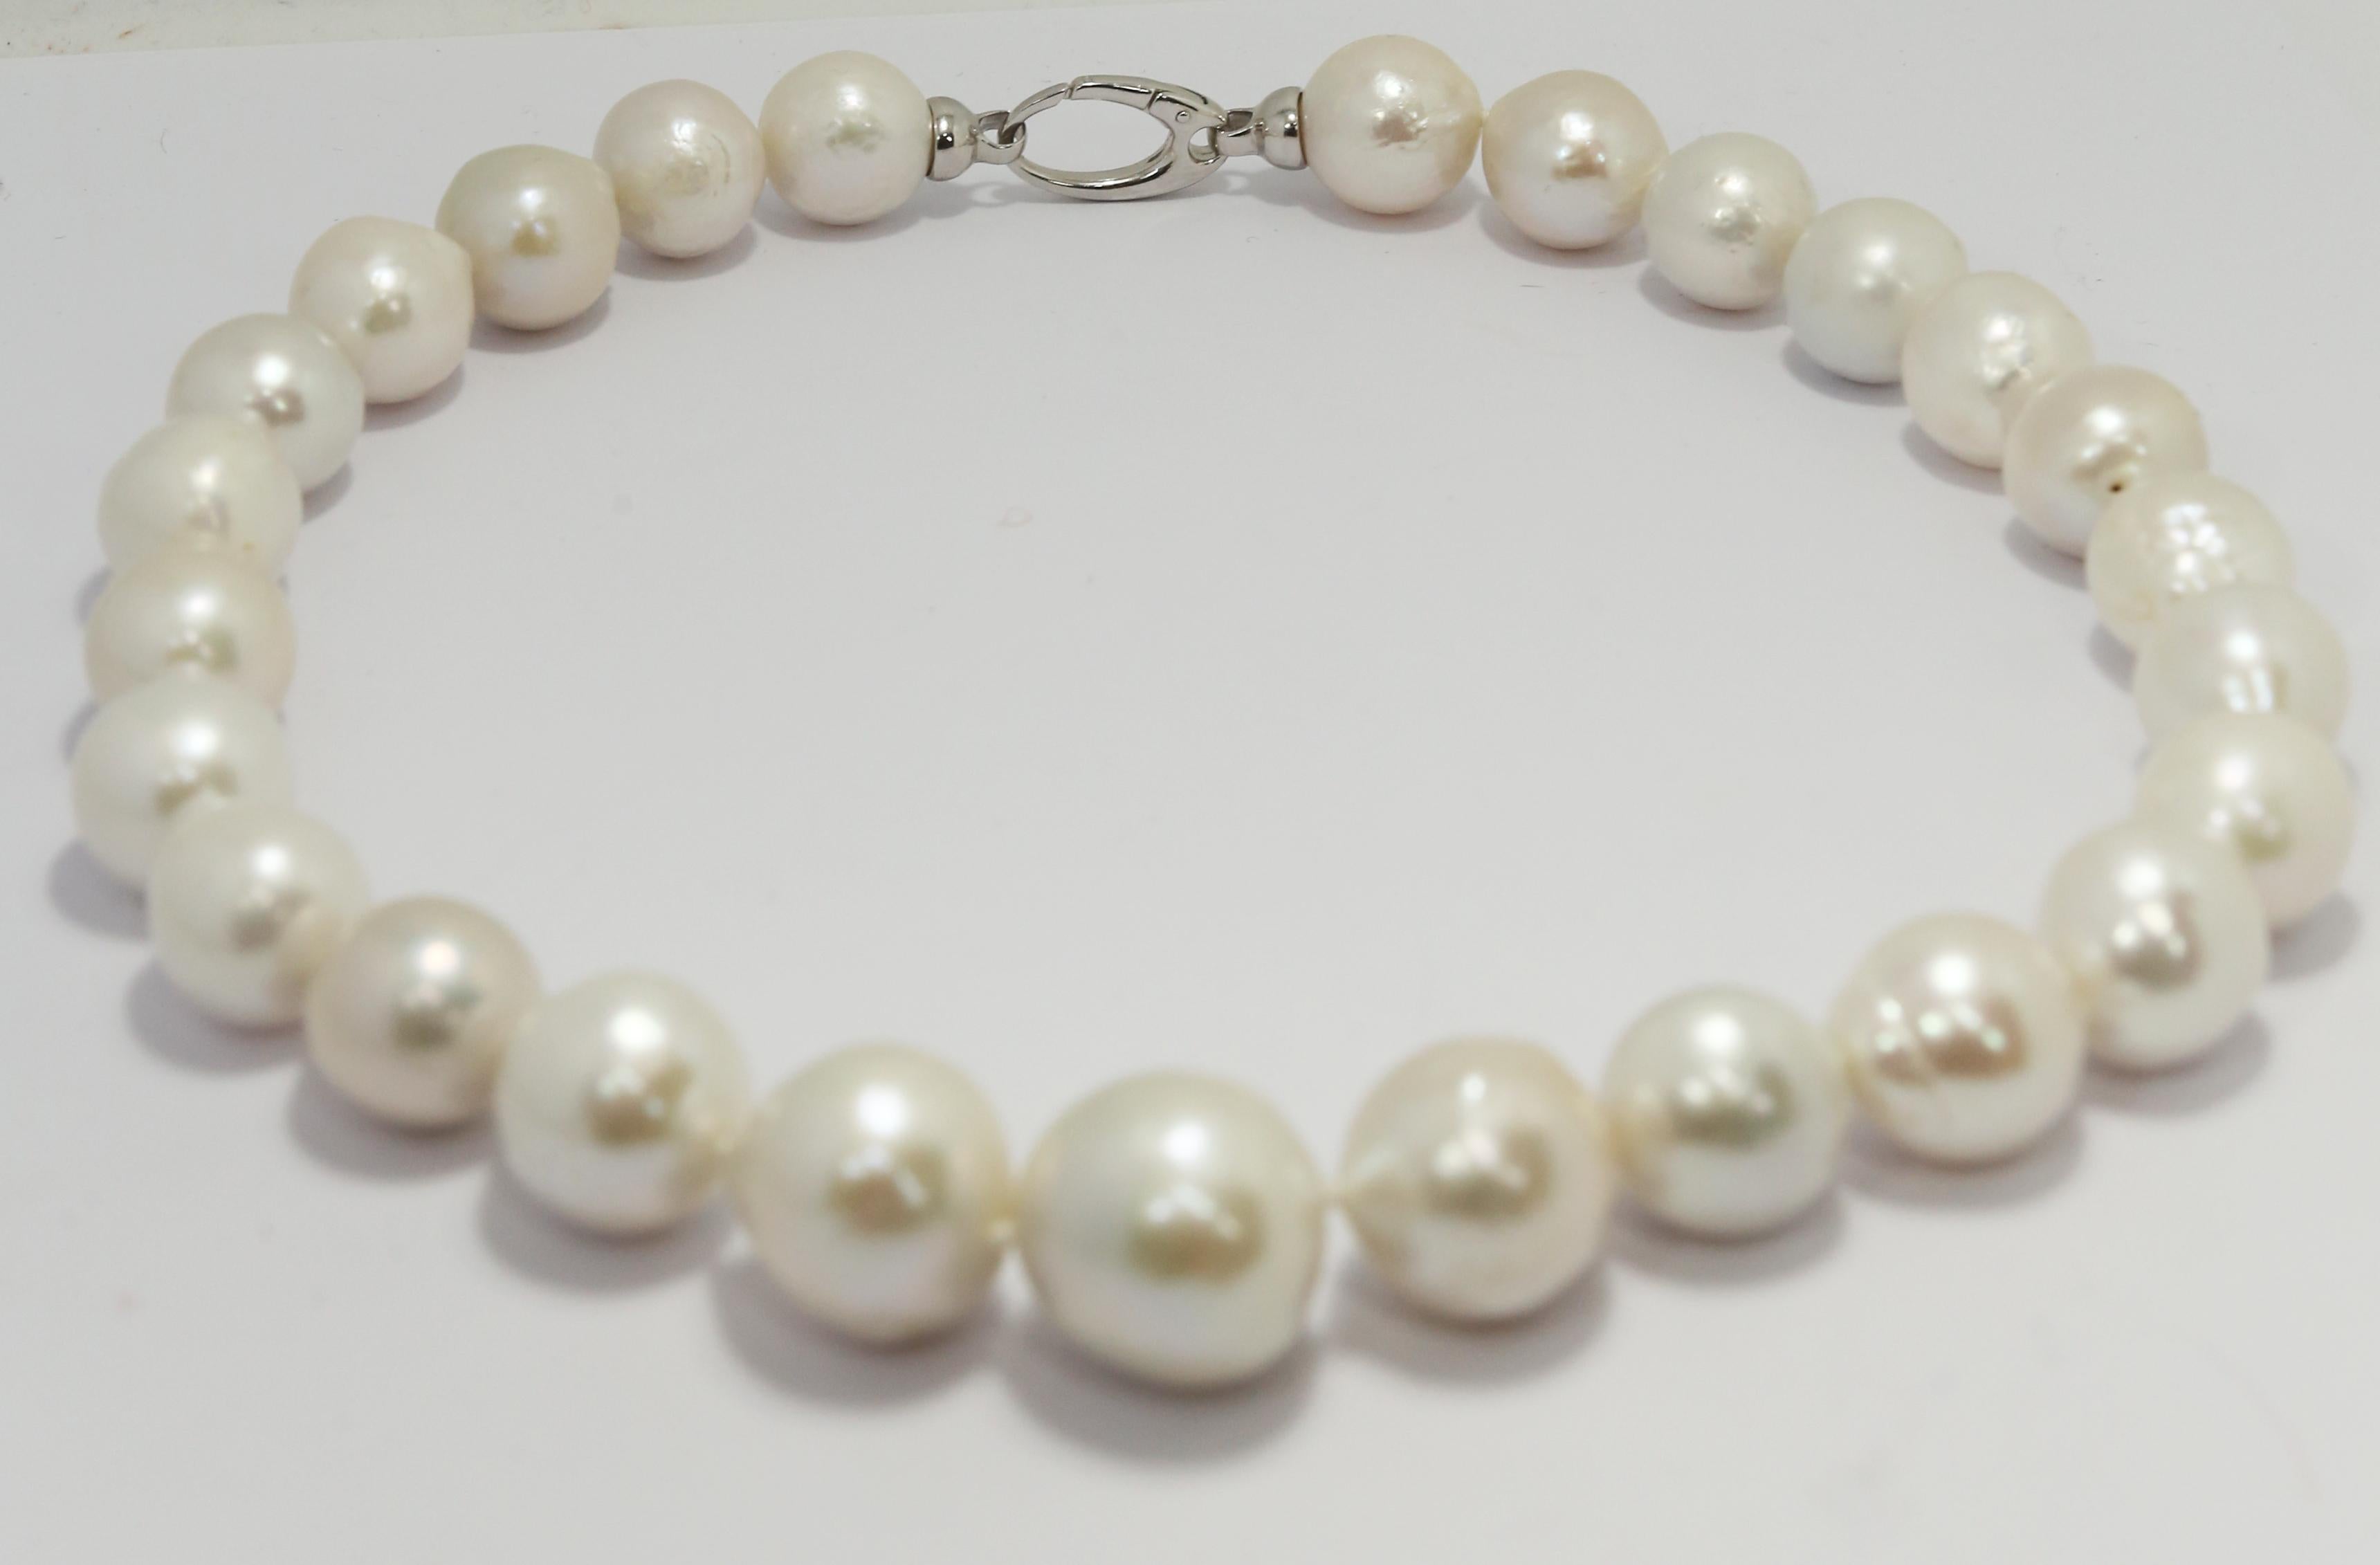 Un collier de perles des mers du Sud cultivées de style baroque, à la fois classique et contemporain, avec un fermoir à gâchette à navette en argent sterling, élégant et fonctionnel.
Taille du collier 40cm + 3 cm de fermoir  ( 15.74 x 1.18 pouces